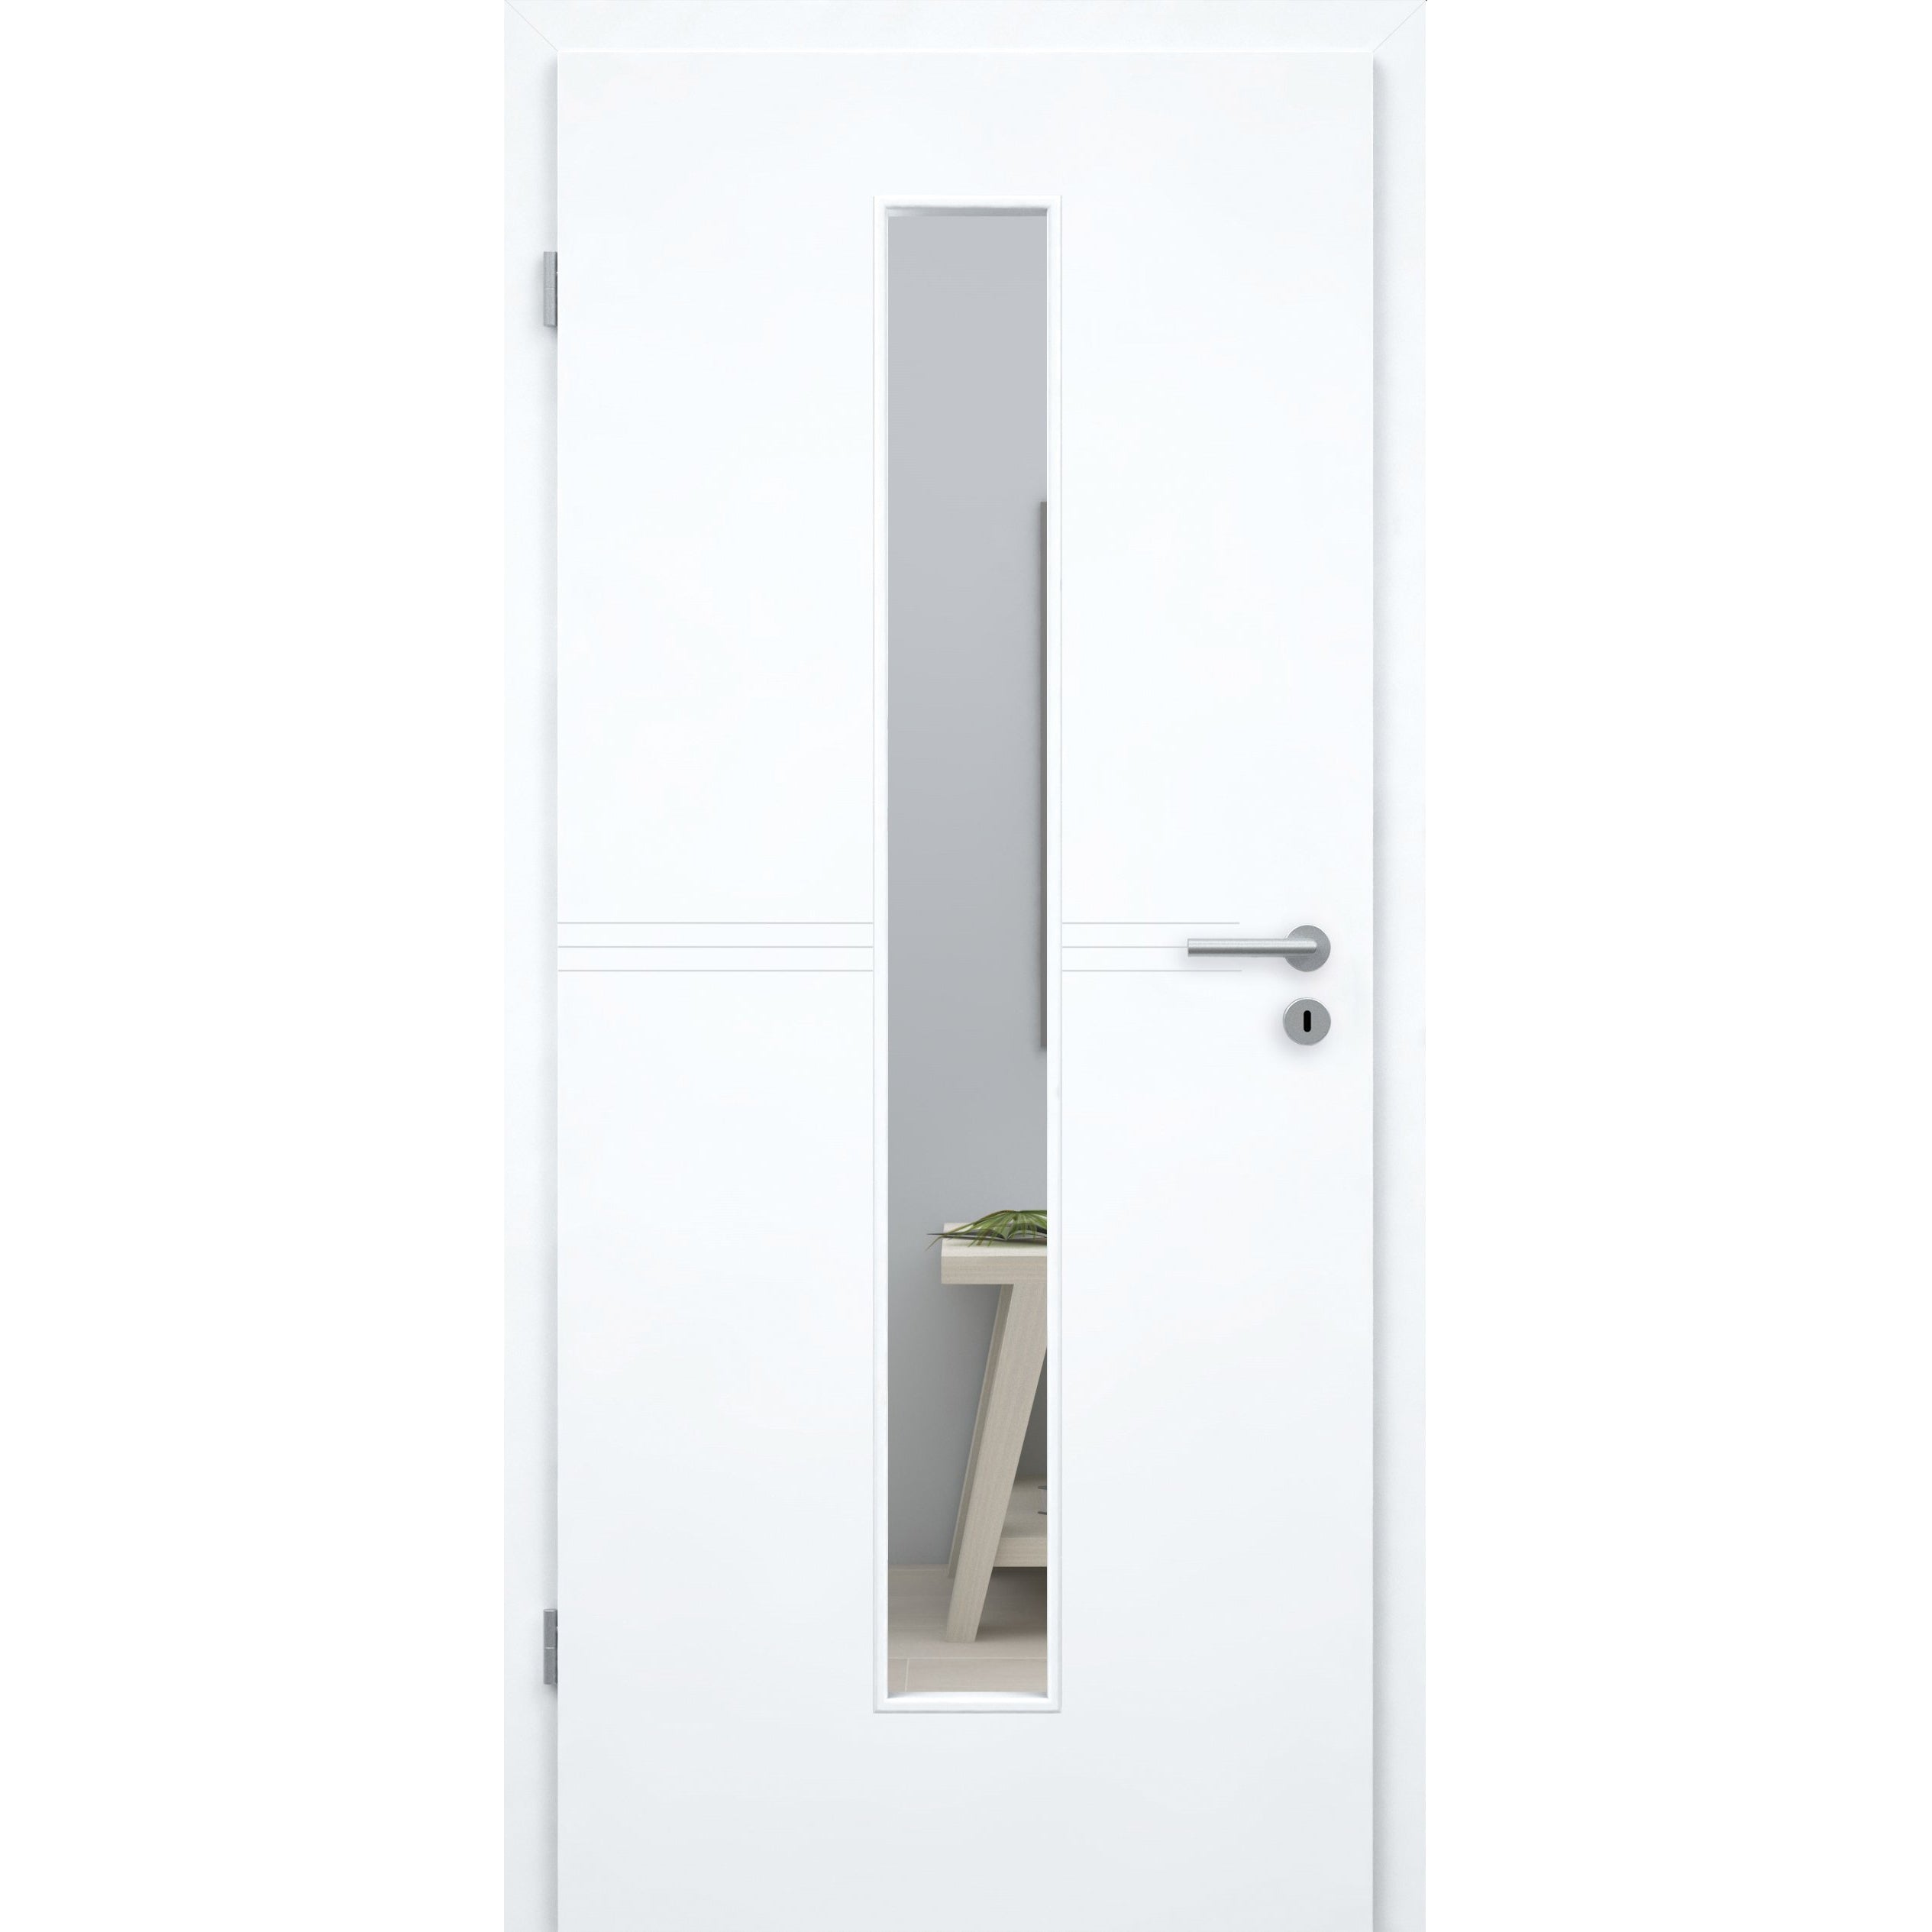 Zimmertür mit Lichtausschnitt brillant-weiß 3 Rillen Designkante - Modell Designtür Q33LAM